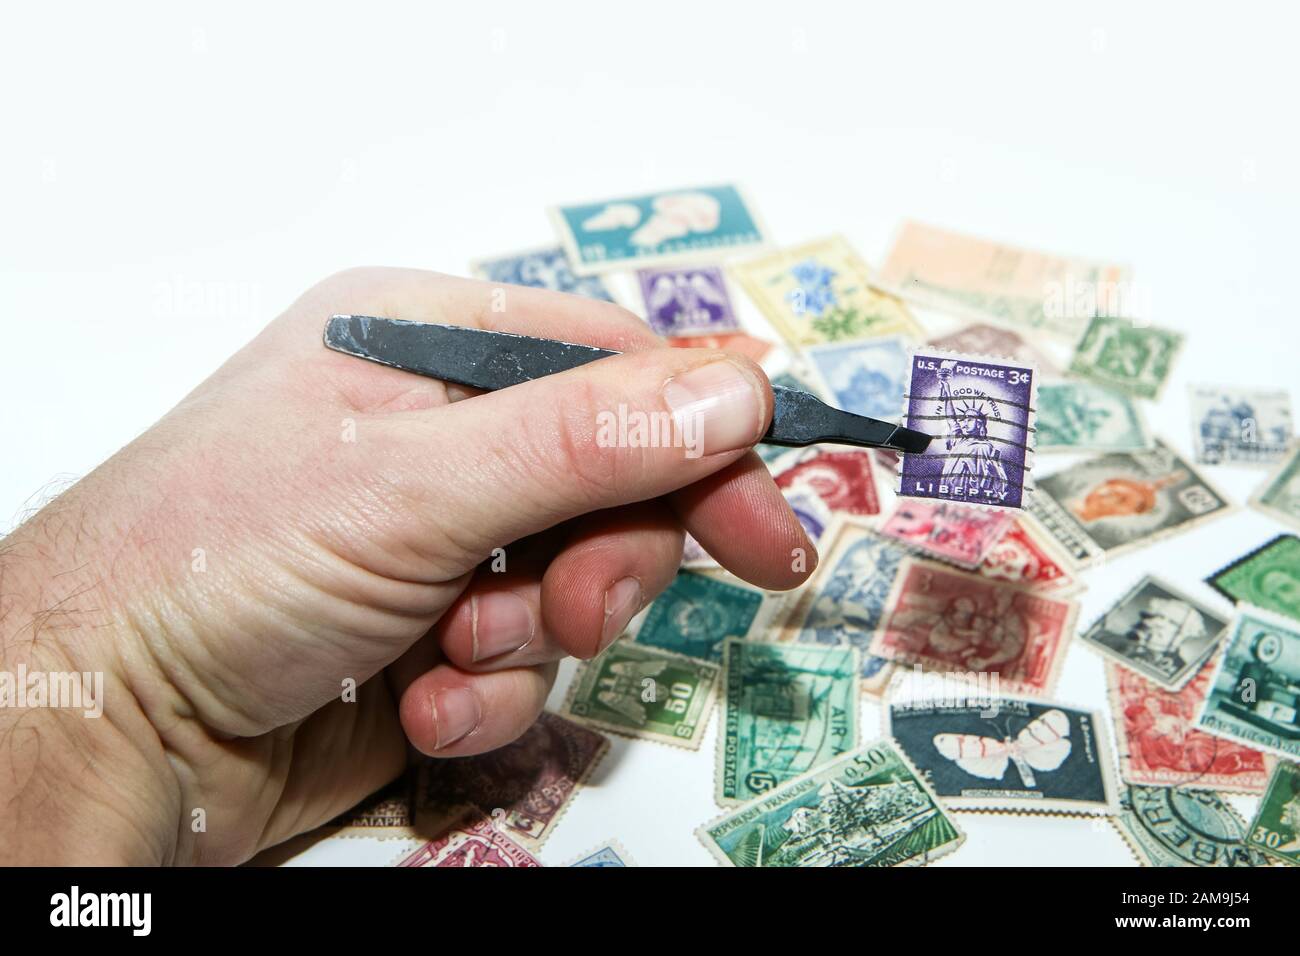 Une main tient un timbre dans le pincer. Plusieurs autres timbres sont couchés en dessous. Philatélie est un hobby ou aussi un investissement. Banque D'Images